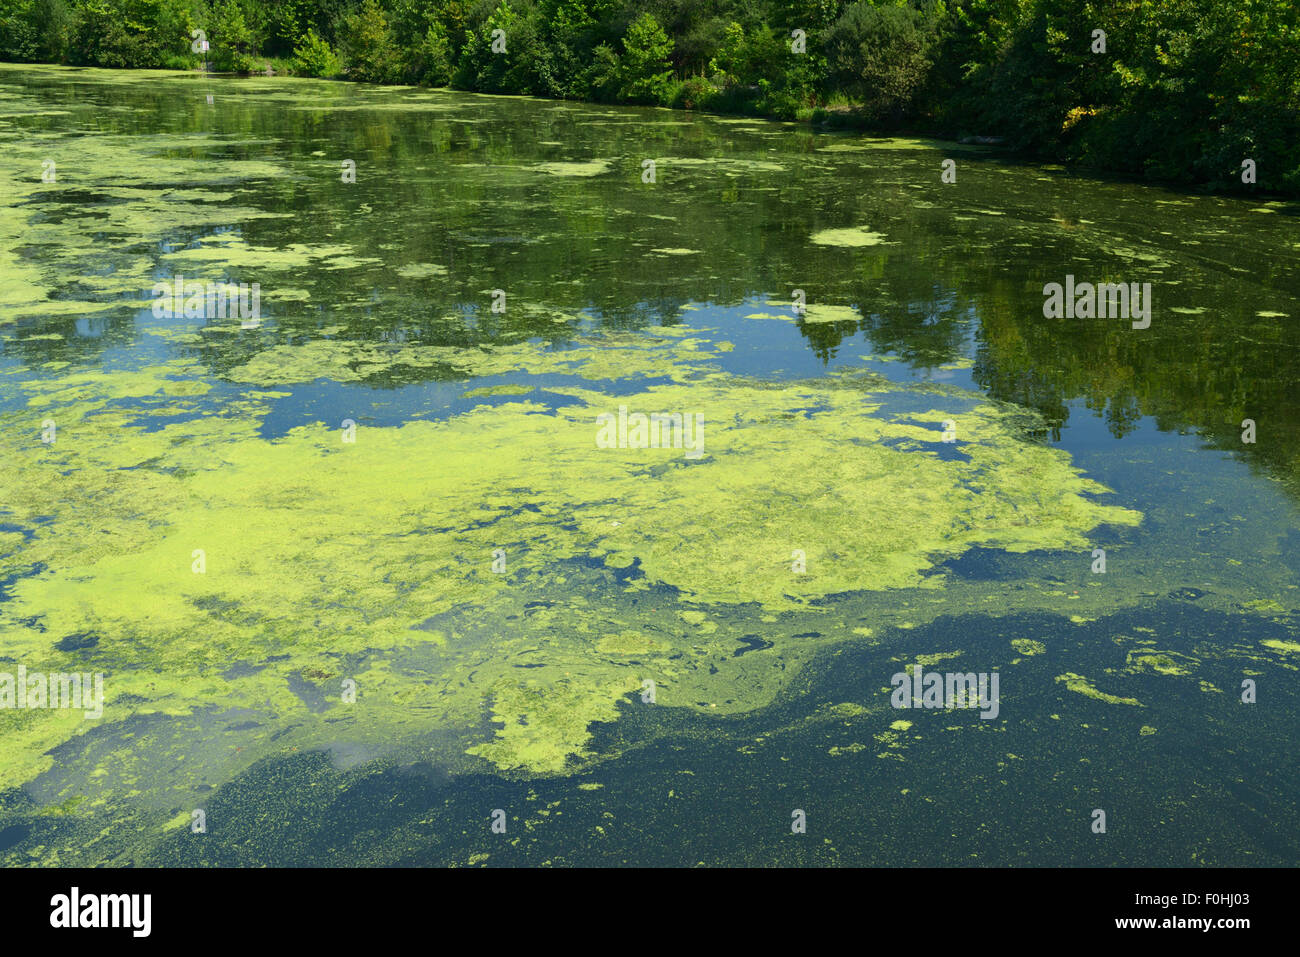 Algues résultant de l'eutrophisation, la rivière Ramapo, nord de la pollution de l'eau (New Jersey). Banque D'Images